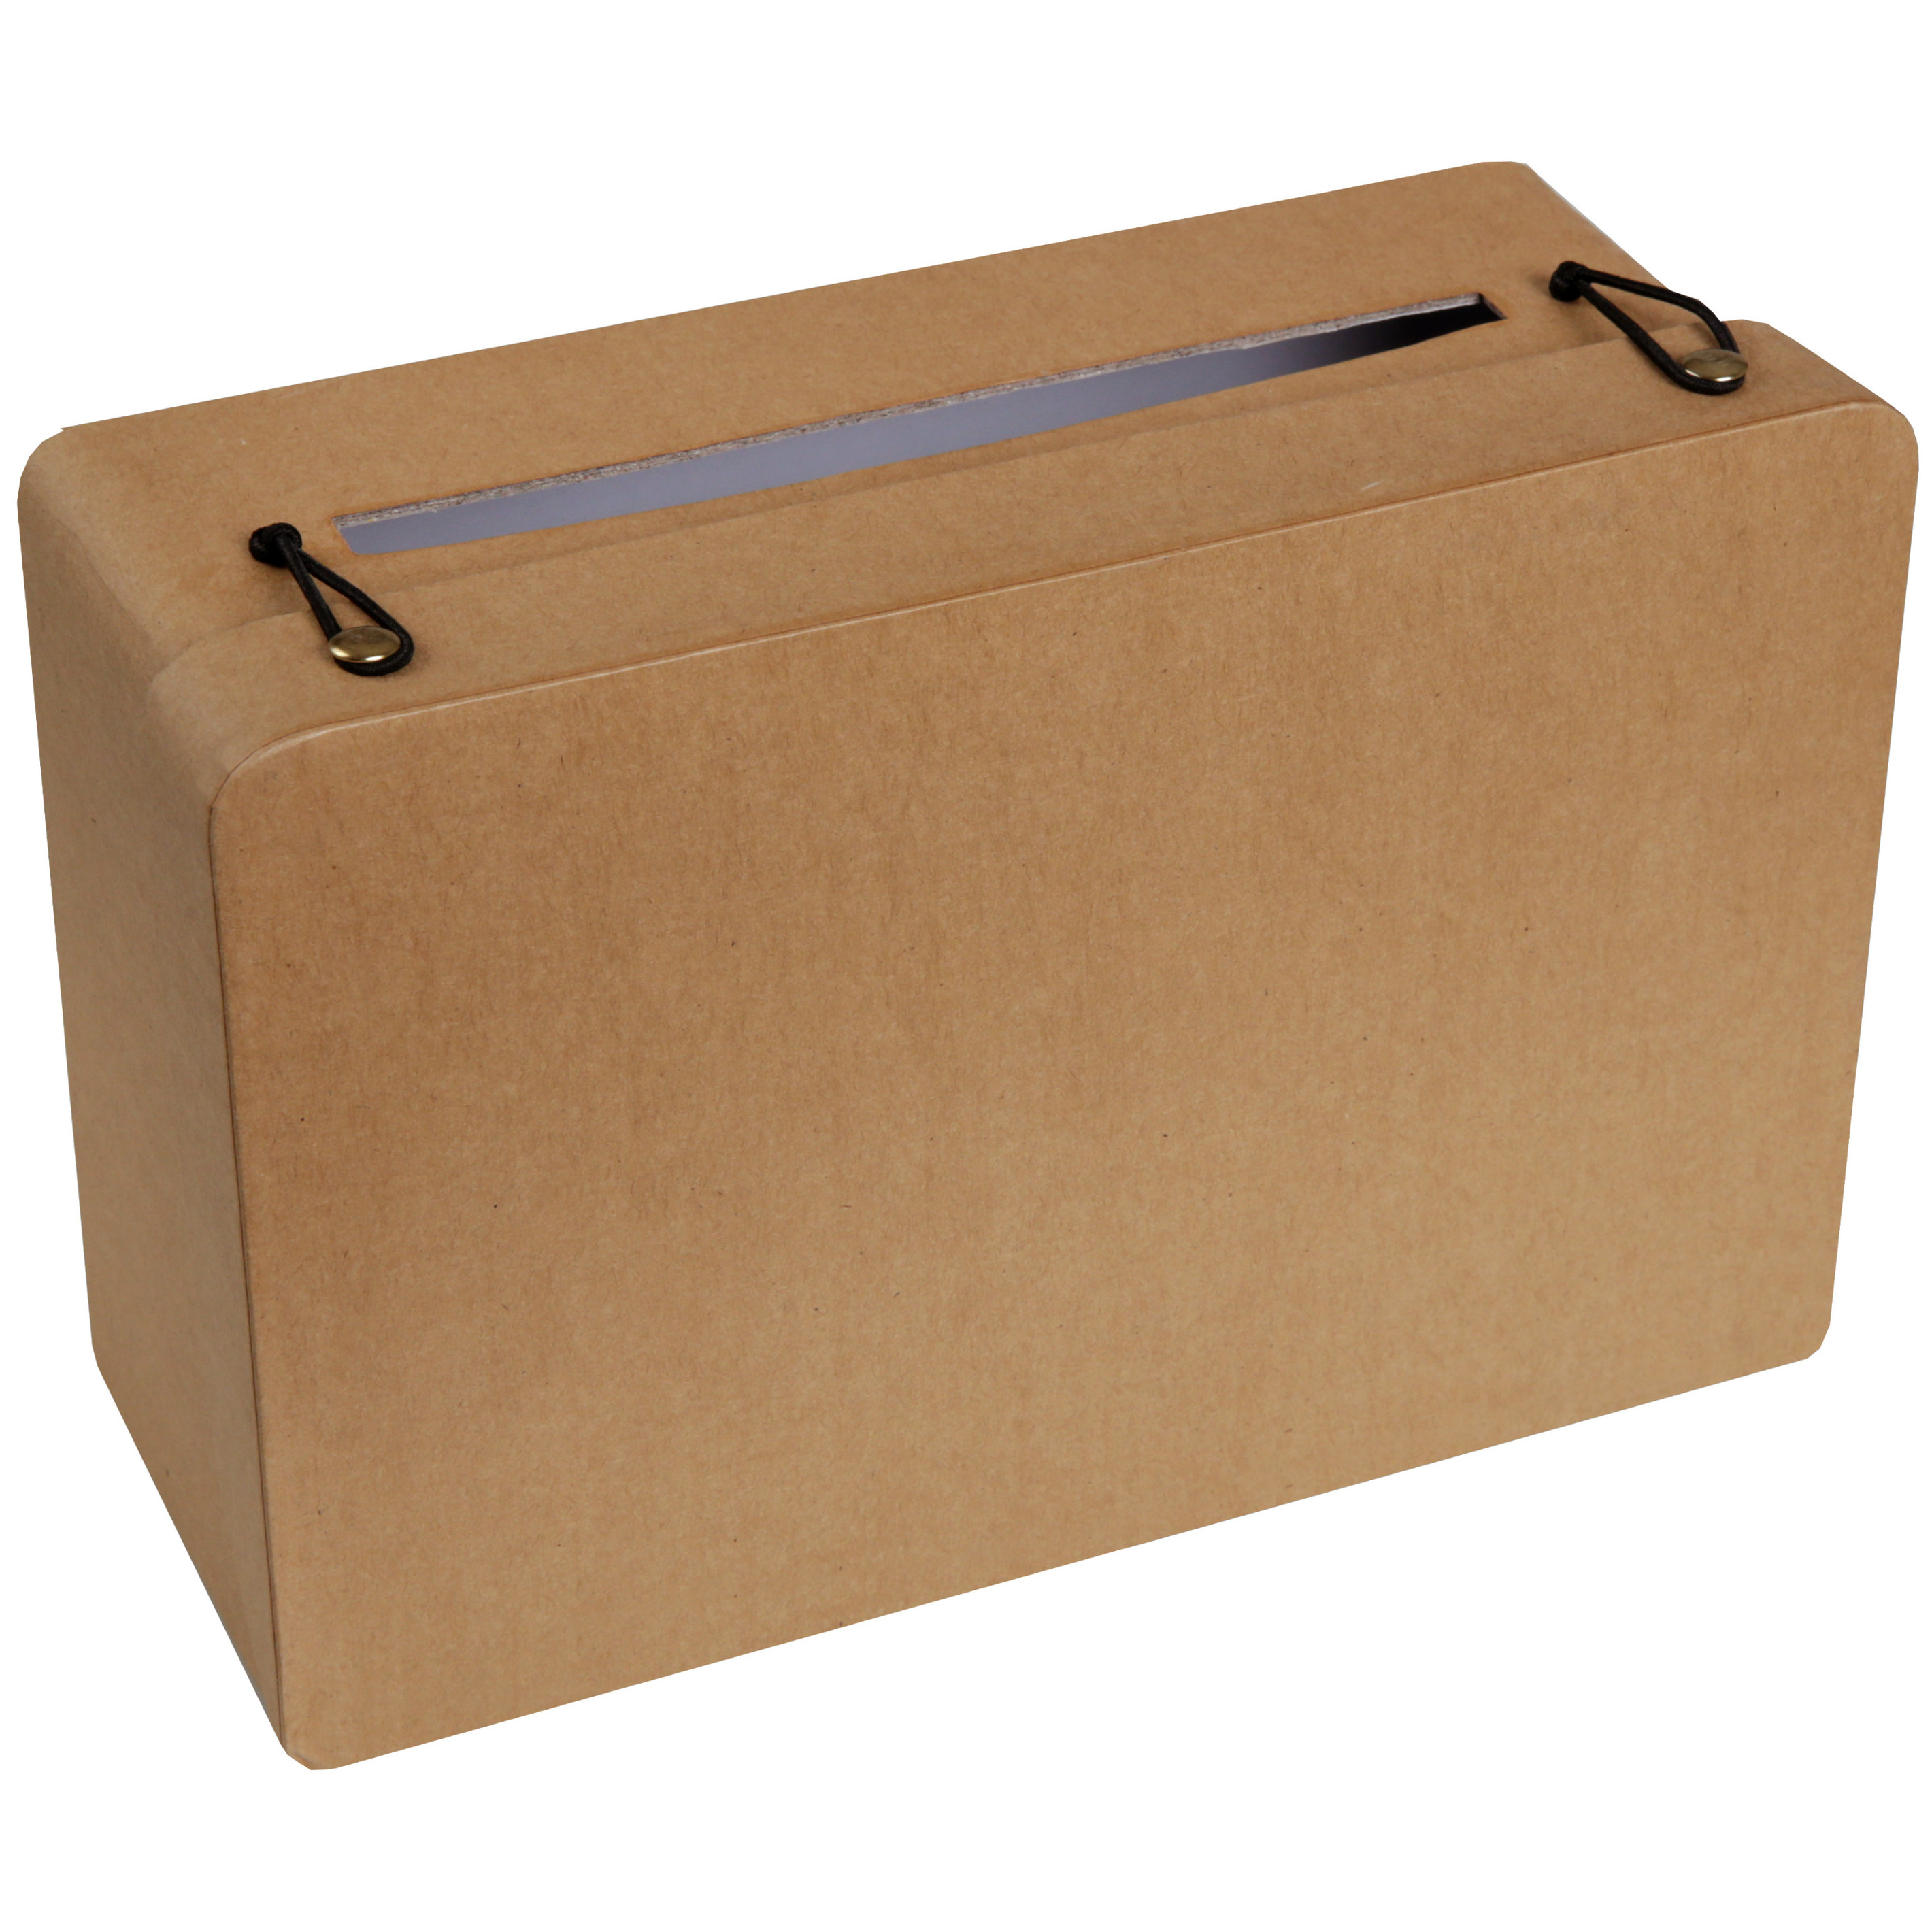 Enveloppendoos koffer vorm Bruiloft bruin karton 24 x 16 cm